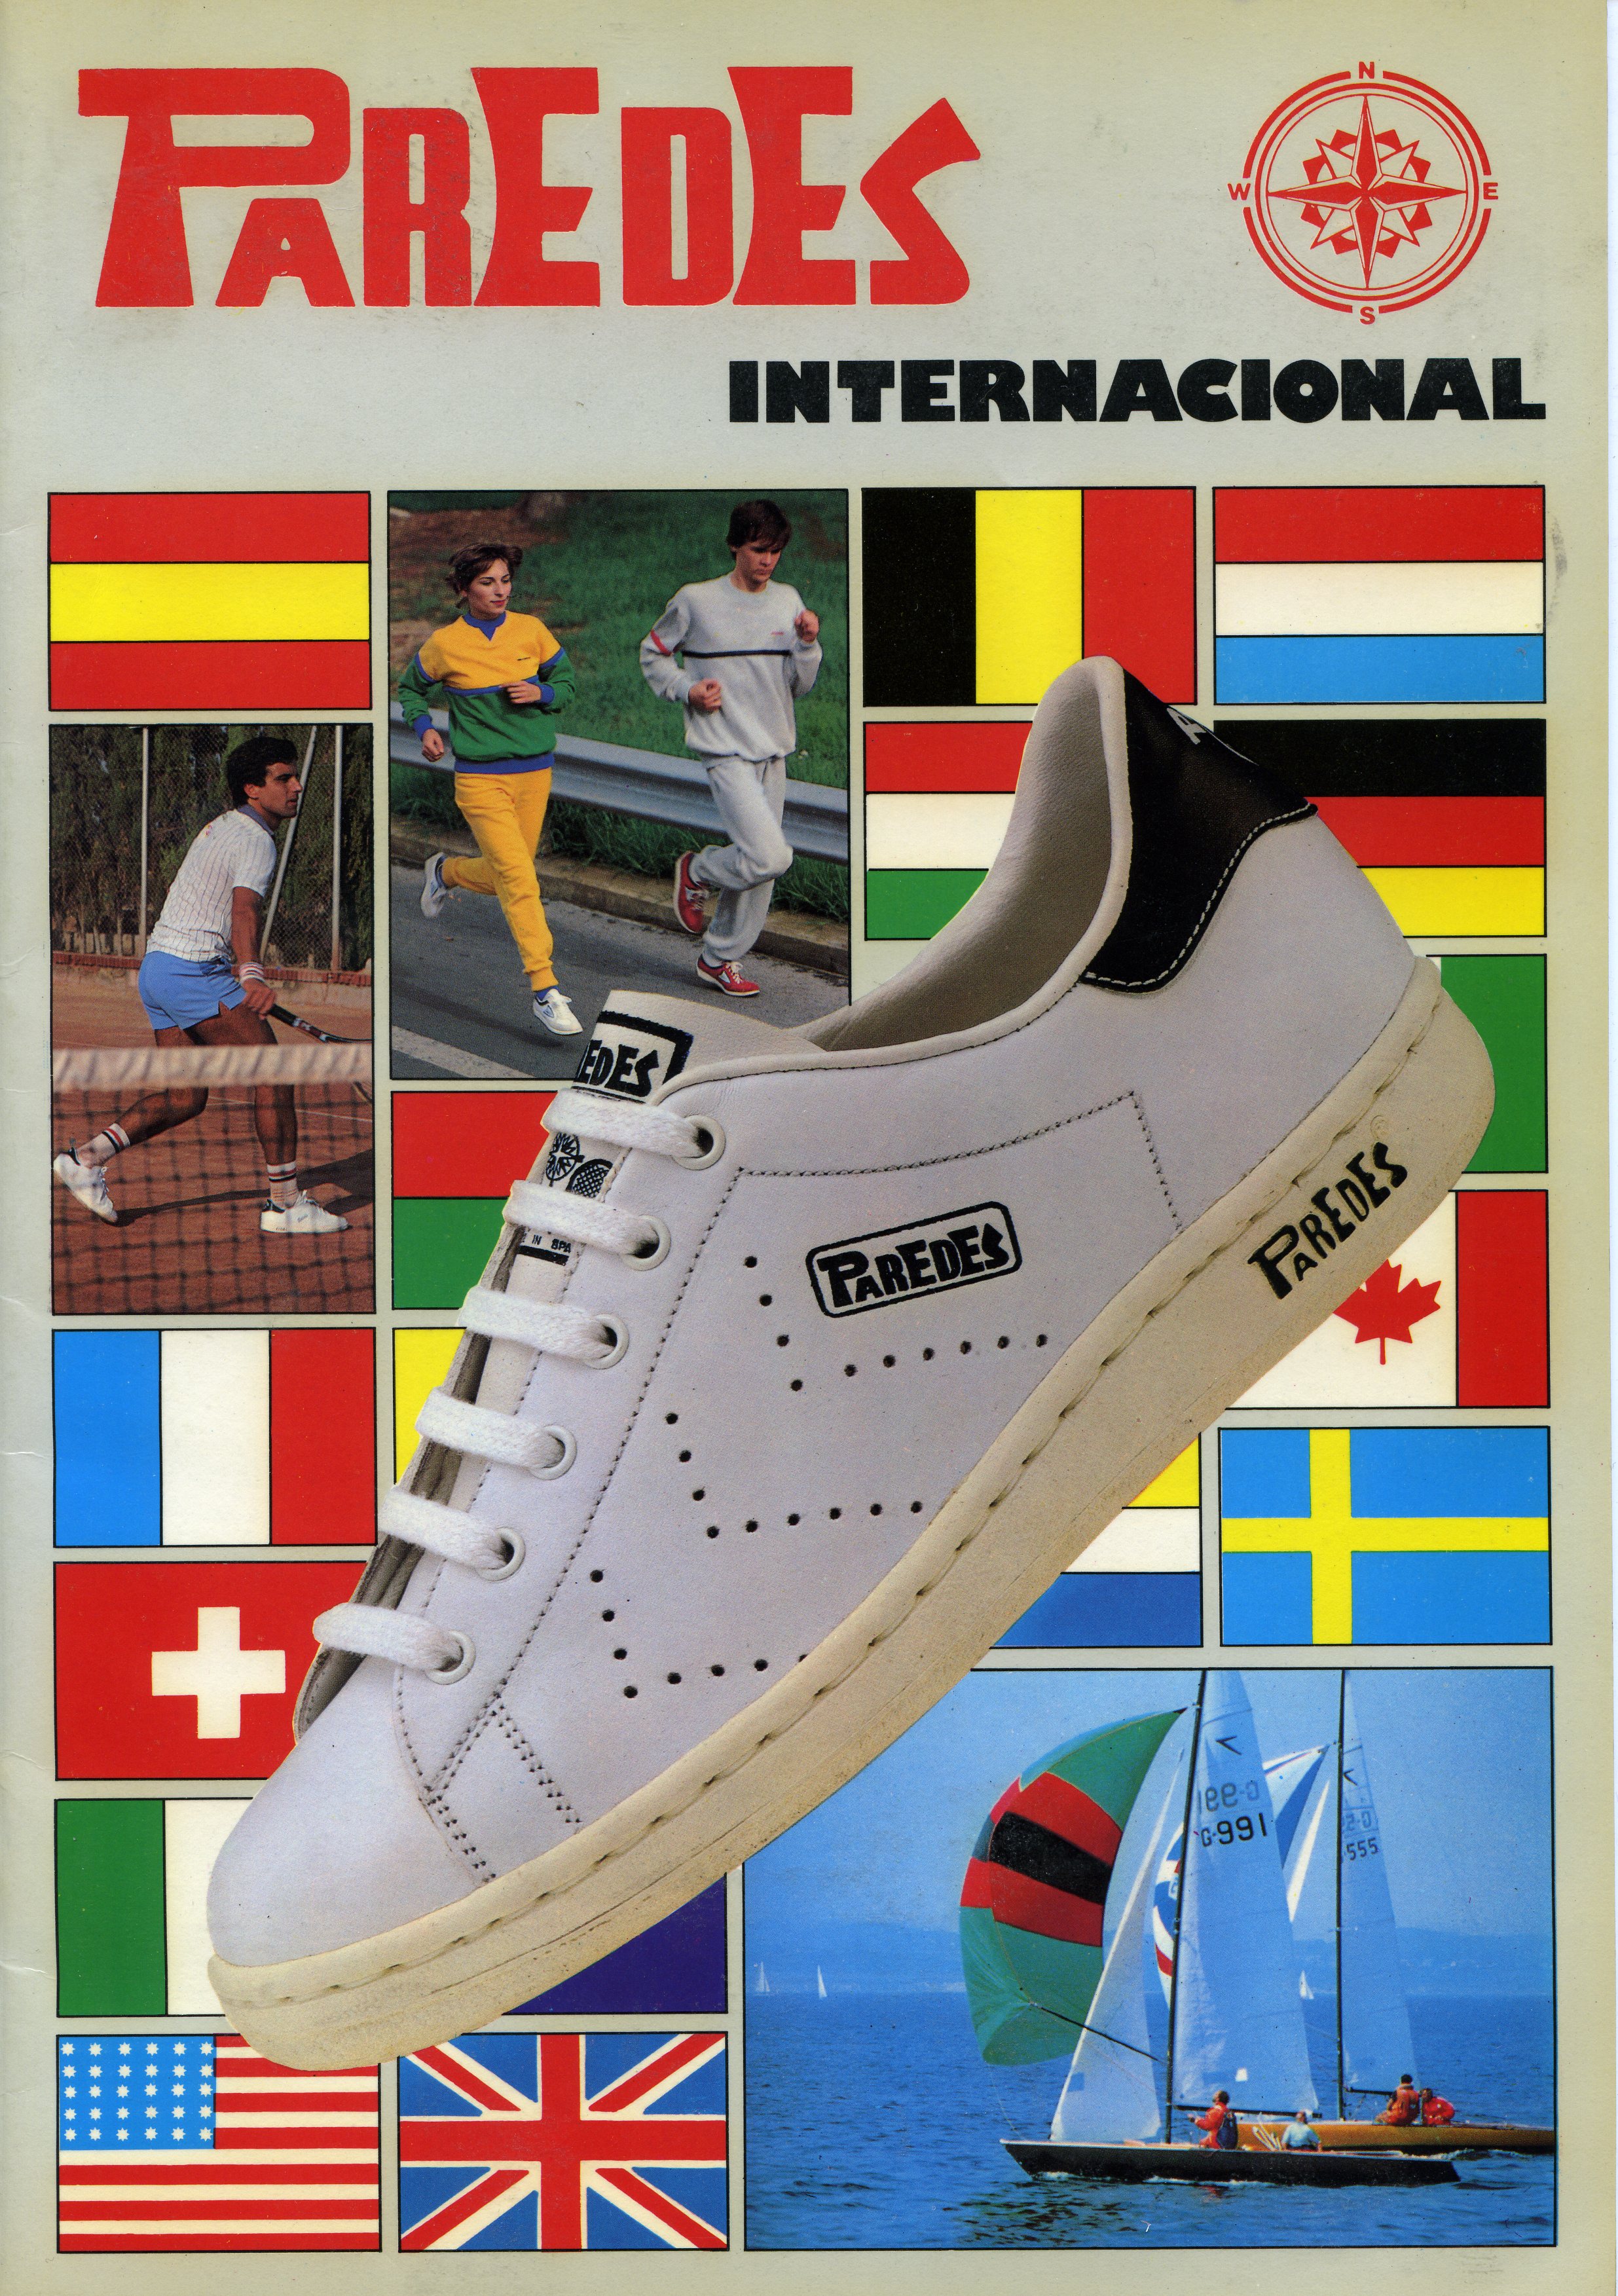 Yumas, la historia de éxito de unas zapatillas españolas